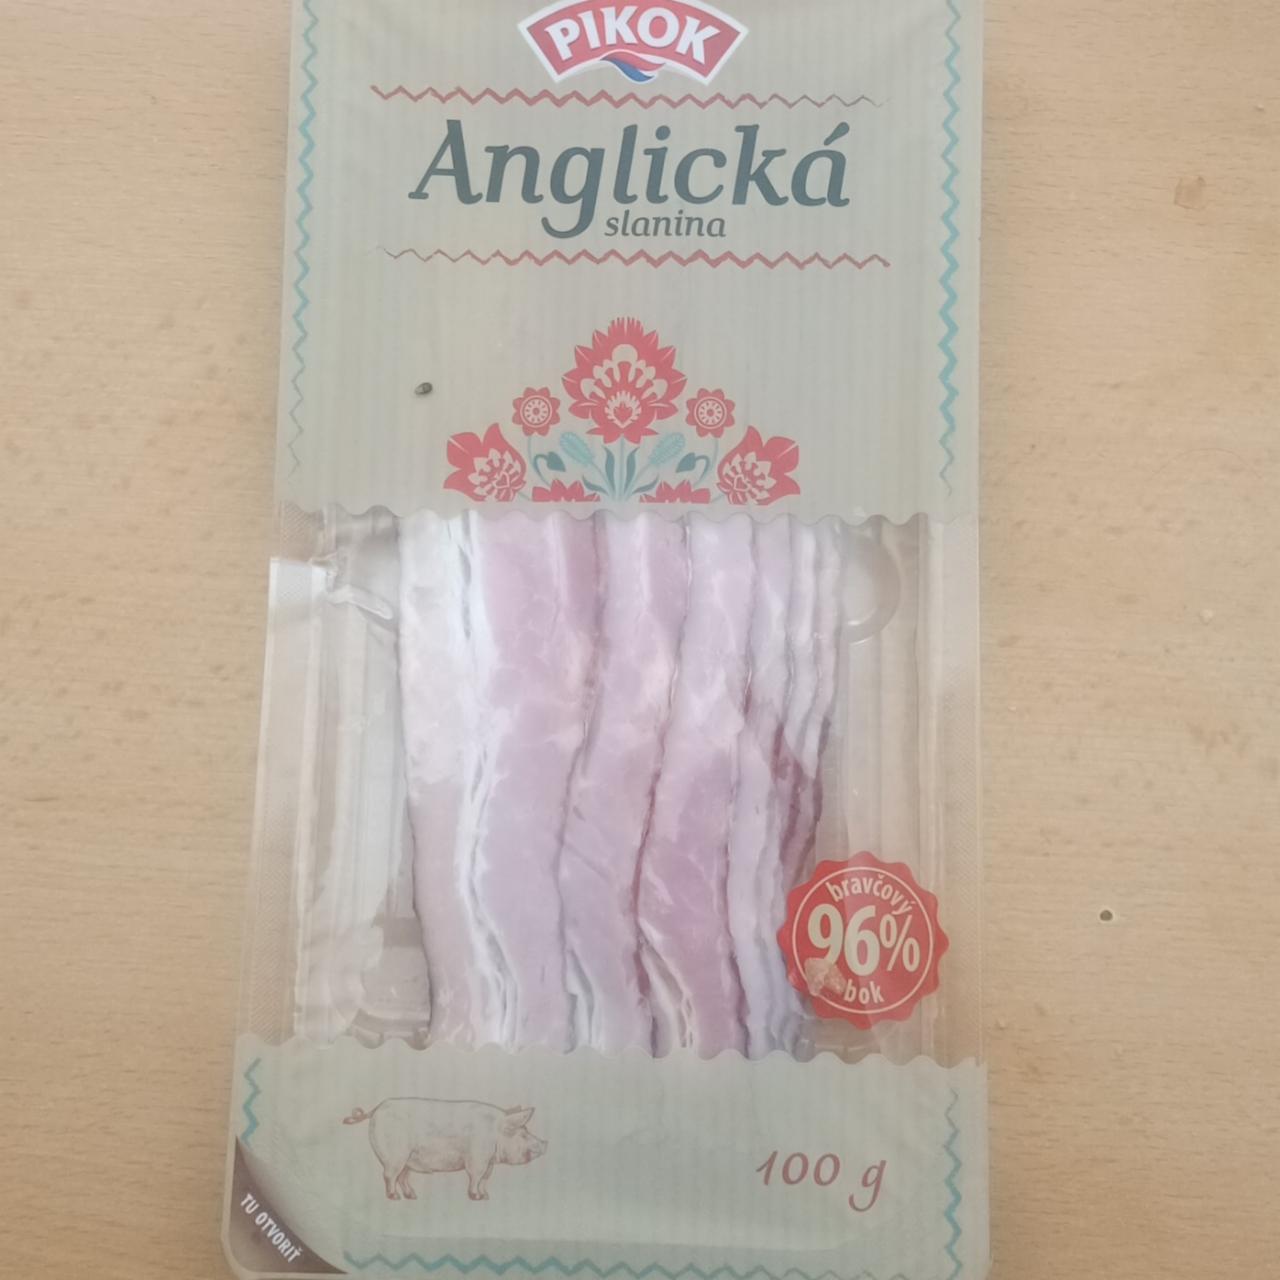 Фото - Anglická slanina 95% vepřový bok Pikok